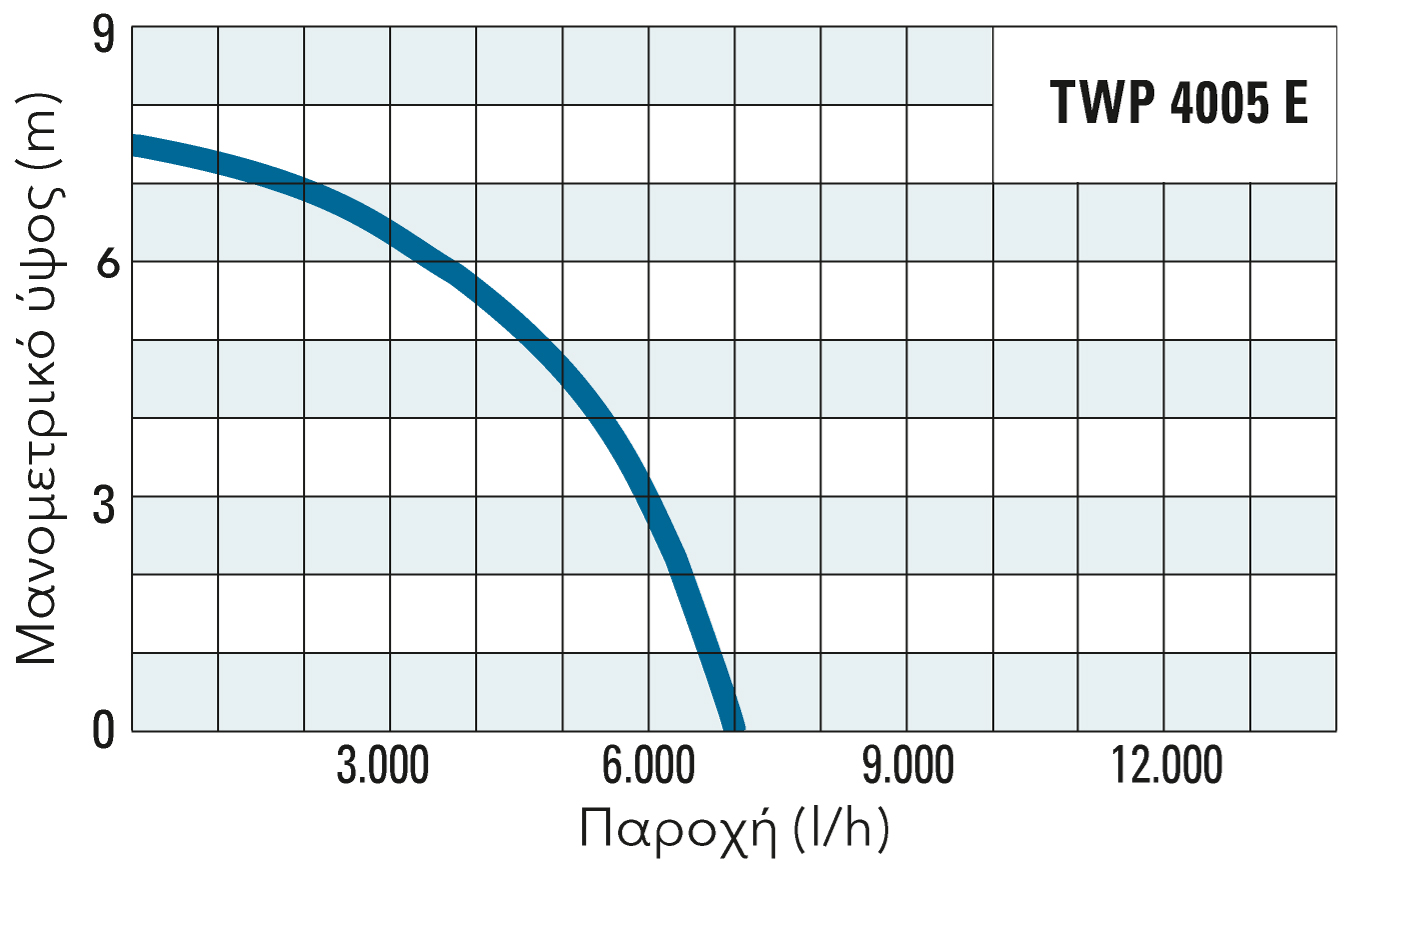 Μανομετρικό ύψος και παροχή της TWP 4005 E